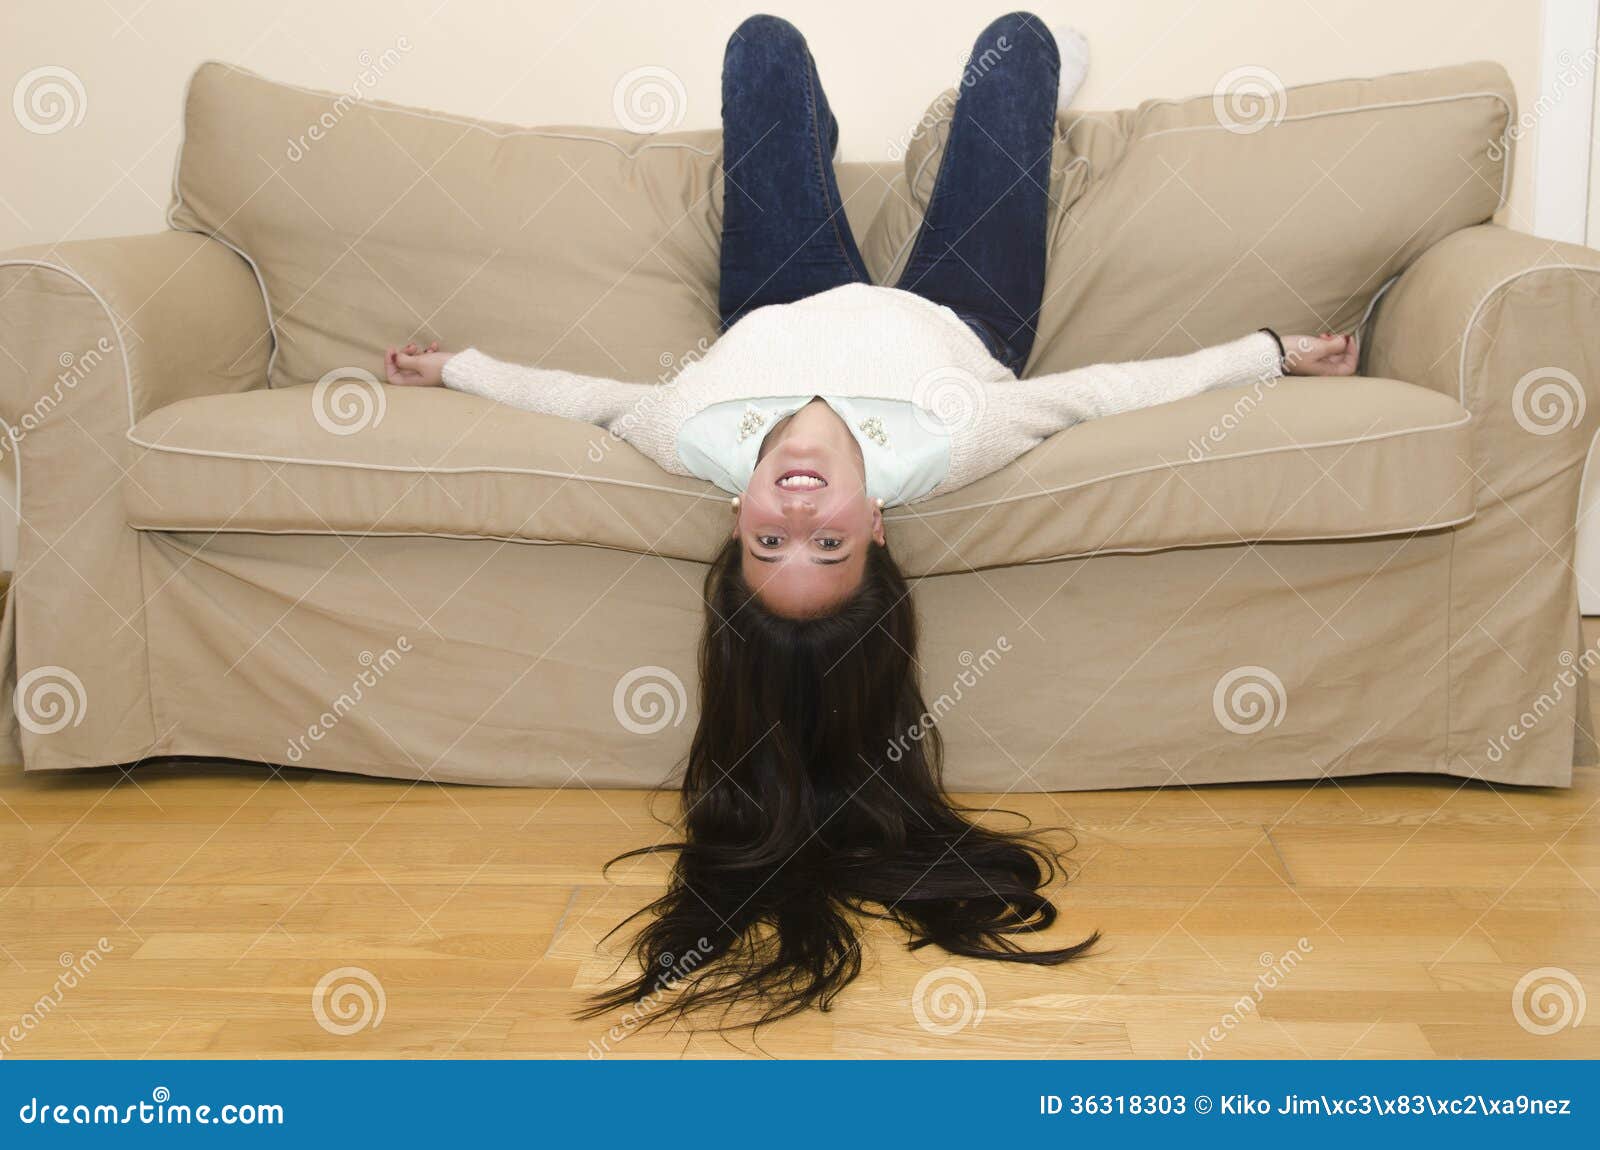 Лежать на затылке. На диване вниз головой. Человек вниз головой на диване. Девушка вниз головой. Человек лежит на диване вверх ногами.